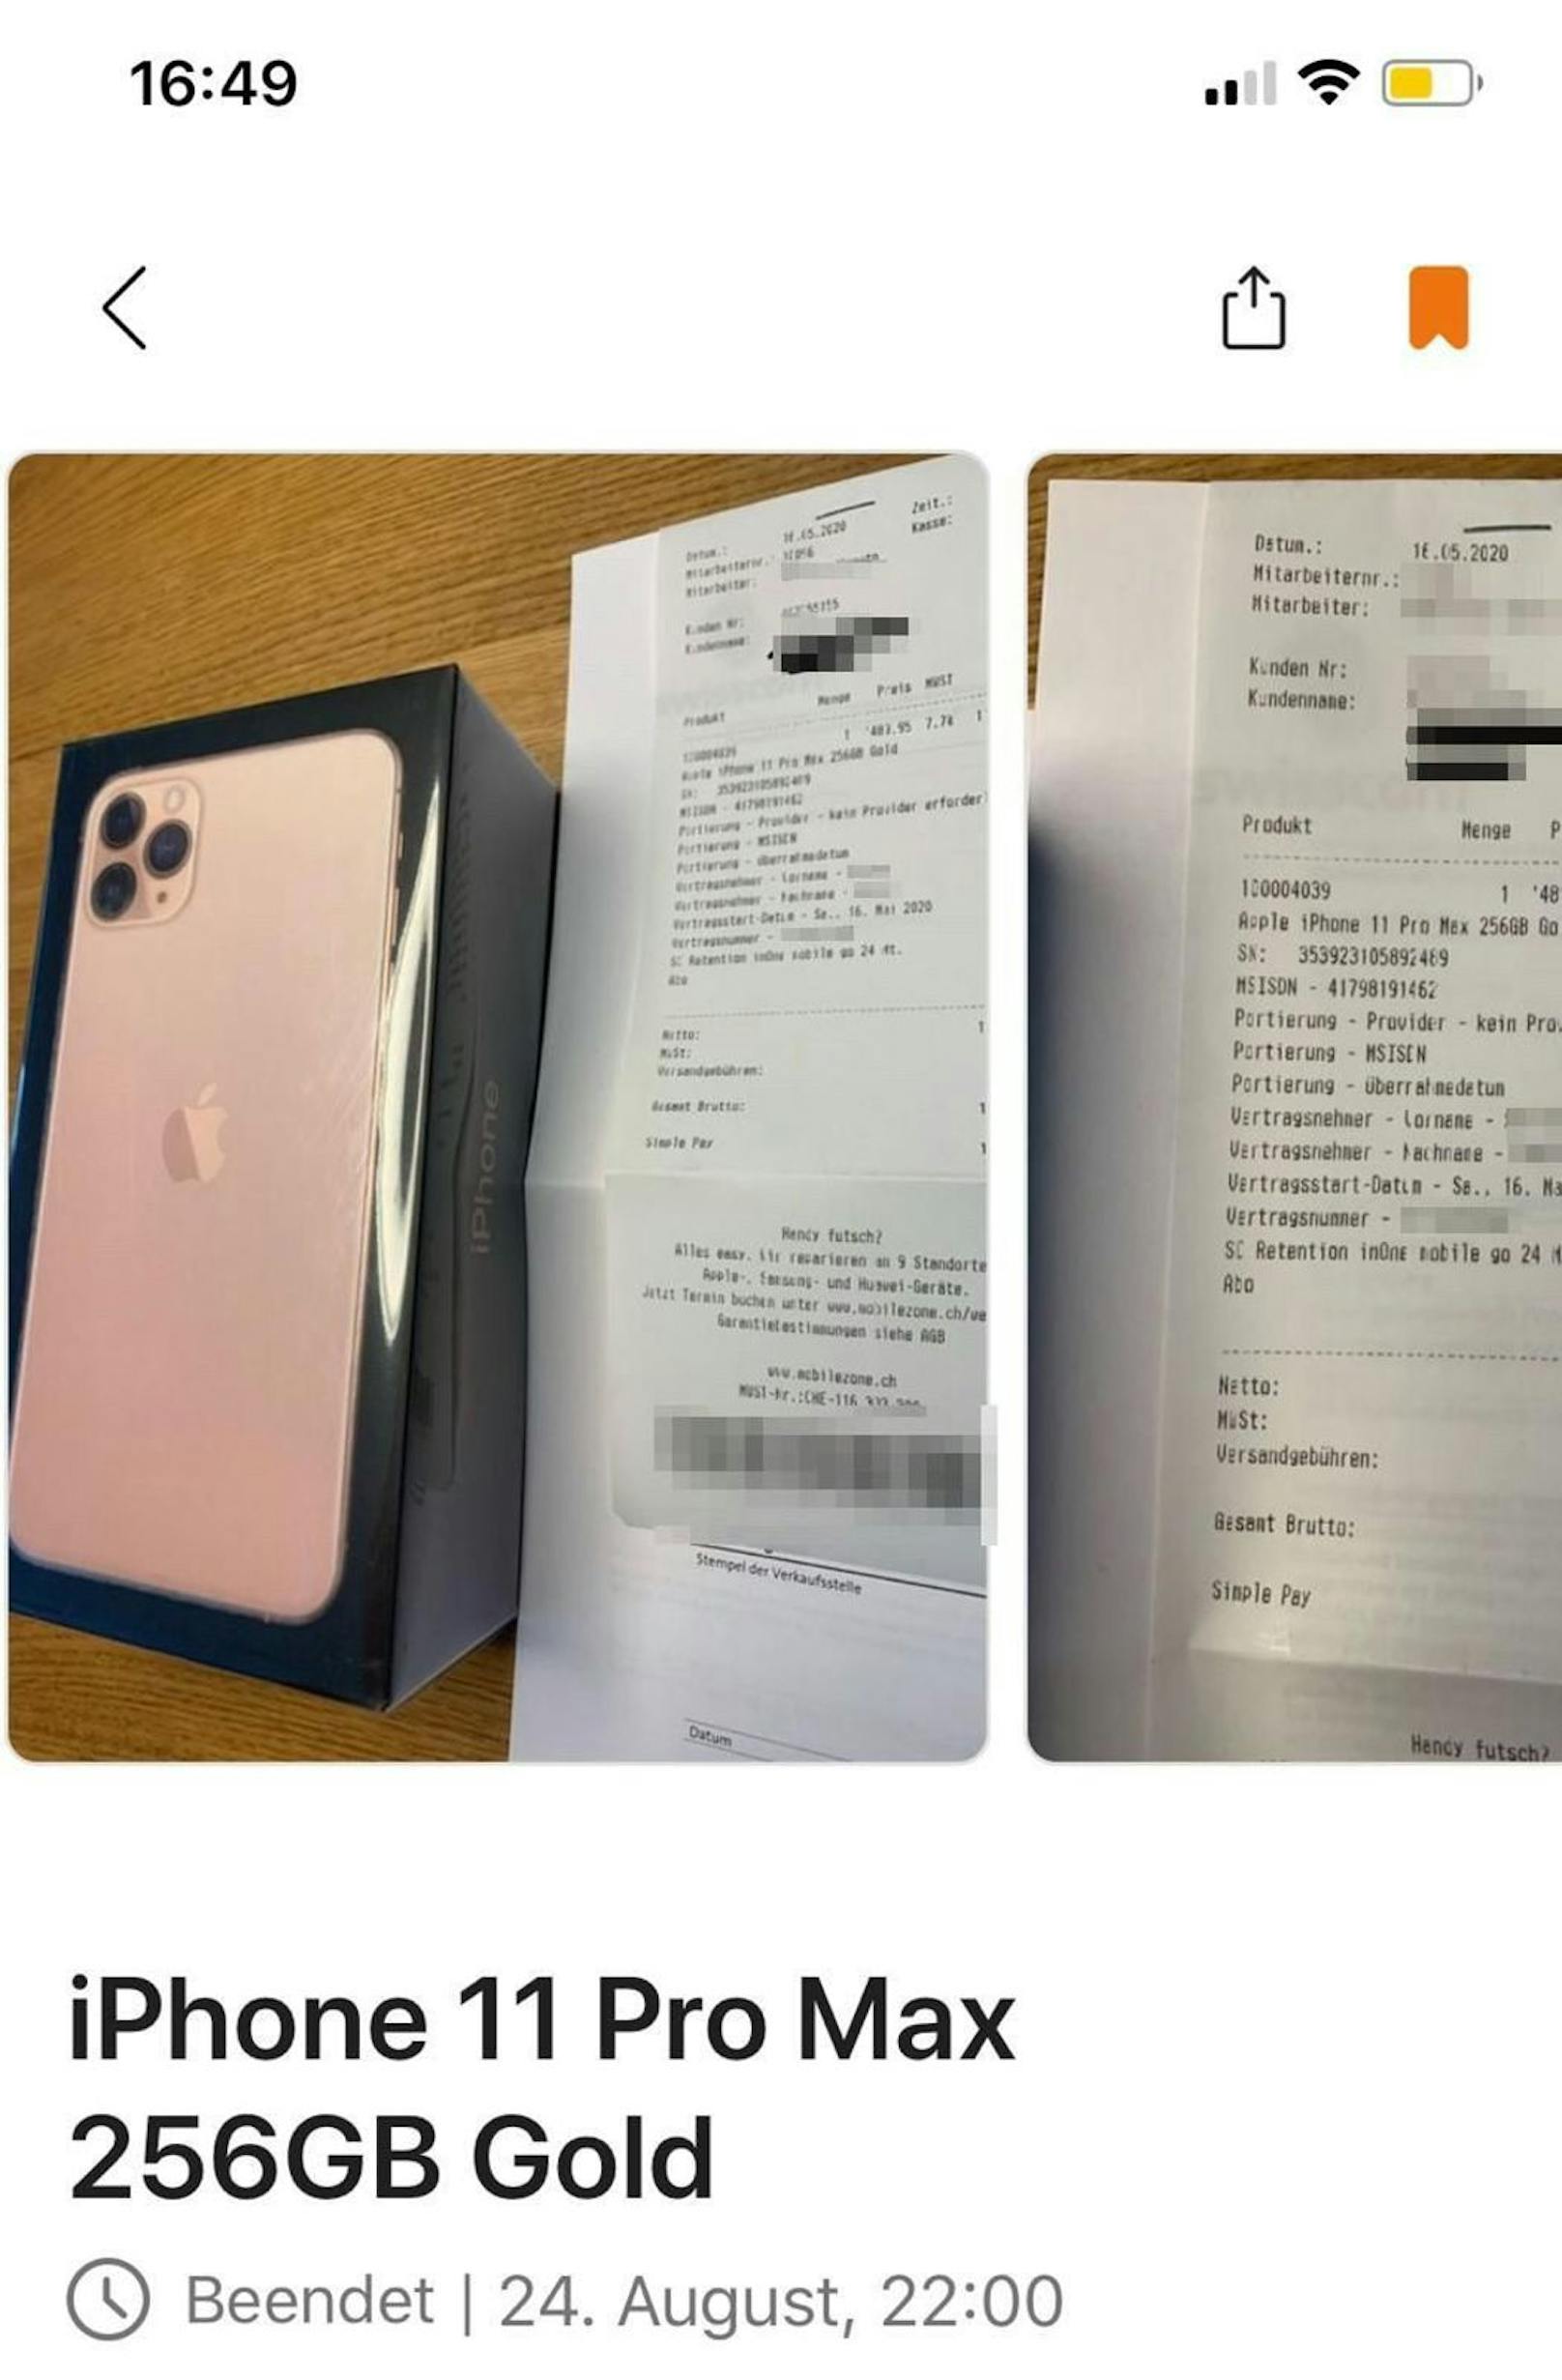 Mit dem Bild wollte der Verkäufer beweisen, dass er das iPhone tatsächlich in Besitz hat.